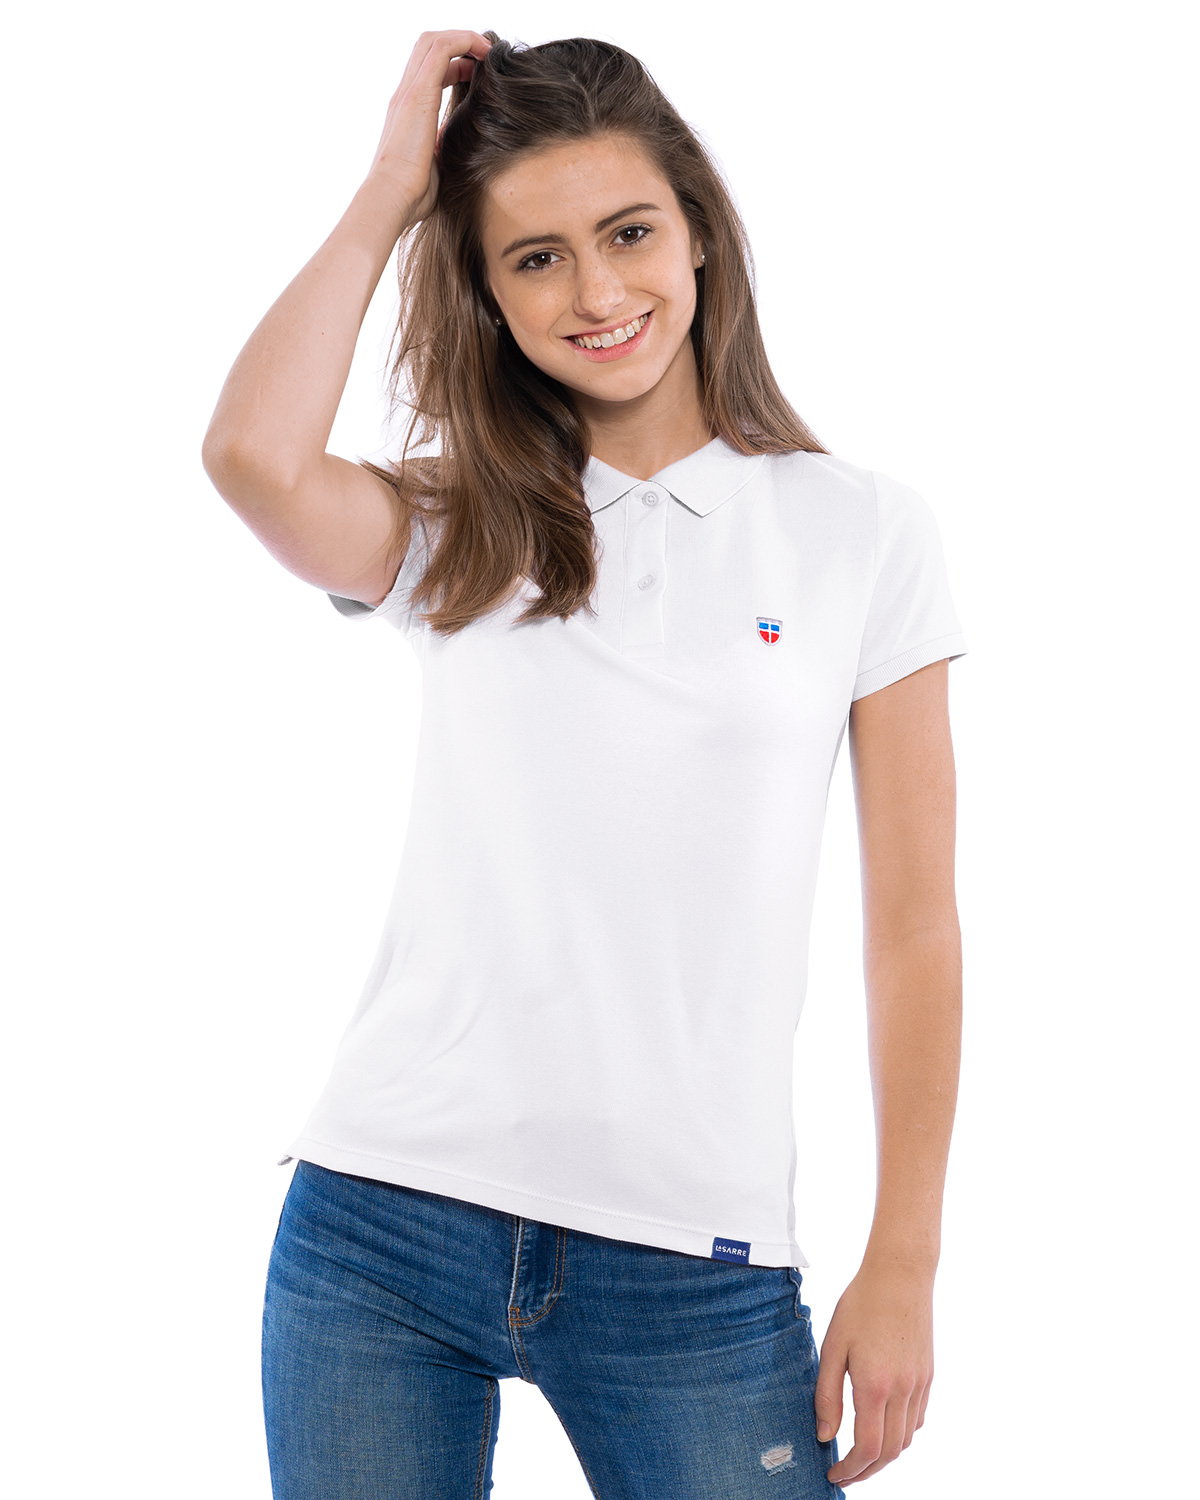 Junge Frau in lockerer Pose im LA SARRE Ladies-Polo-Shirt. Frontal-Ansicht des Oberteils der Saarland Marke in der Farbe Weiß mit blauem LA SARRE Saumlabel und dem Sarre-Wappen als Stickerei auf der Brust.